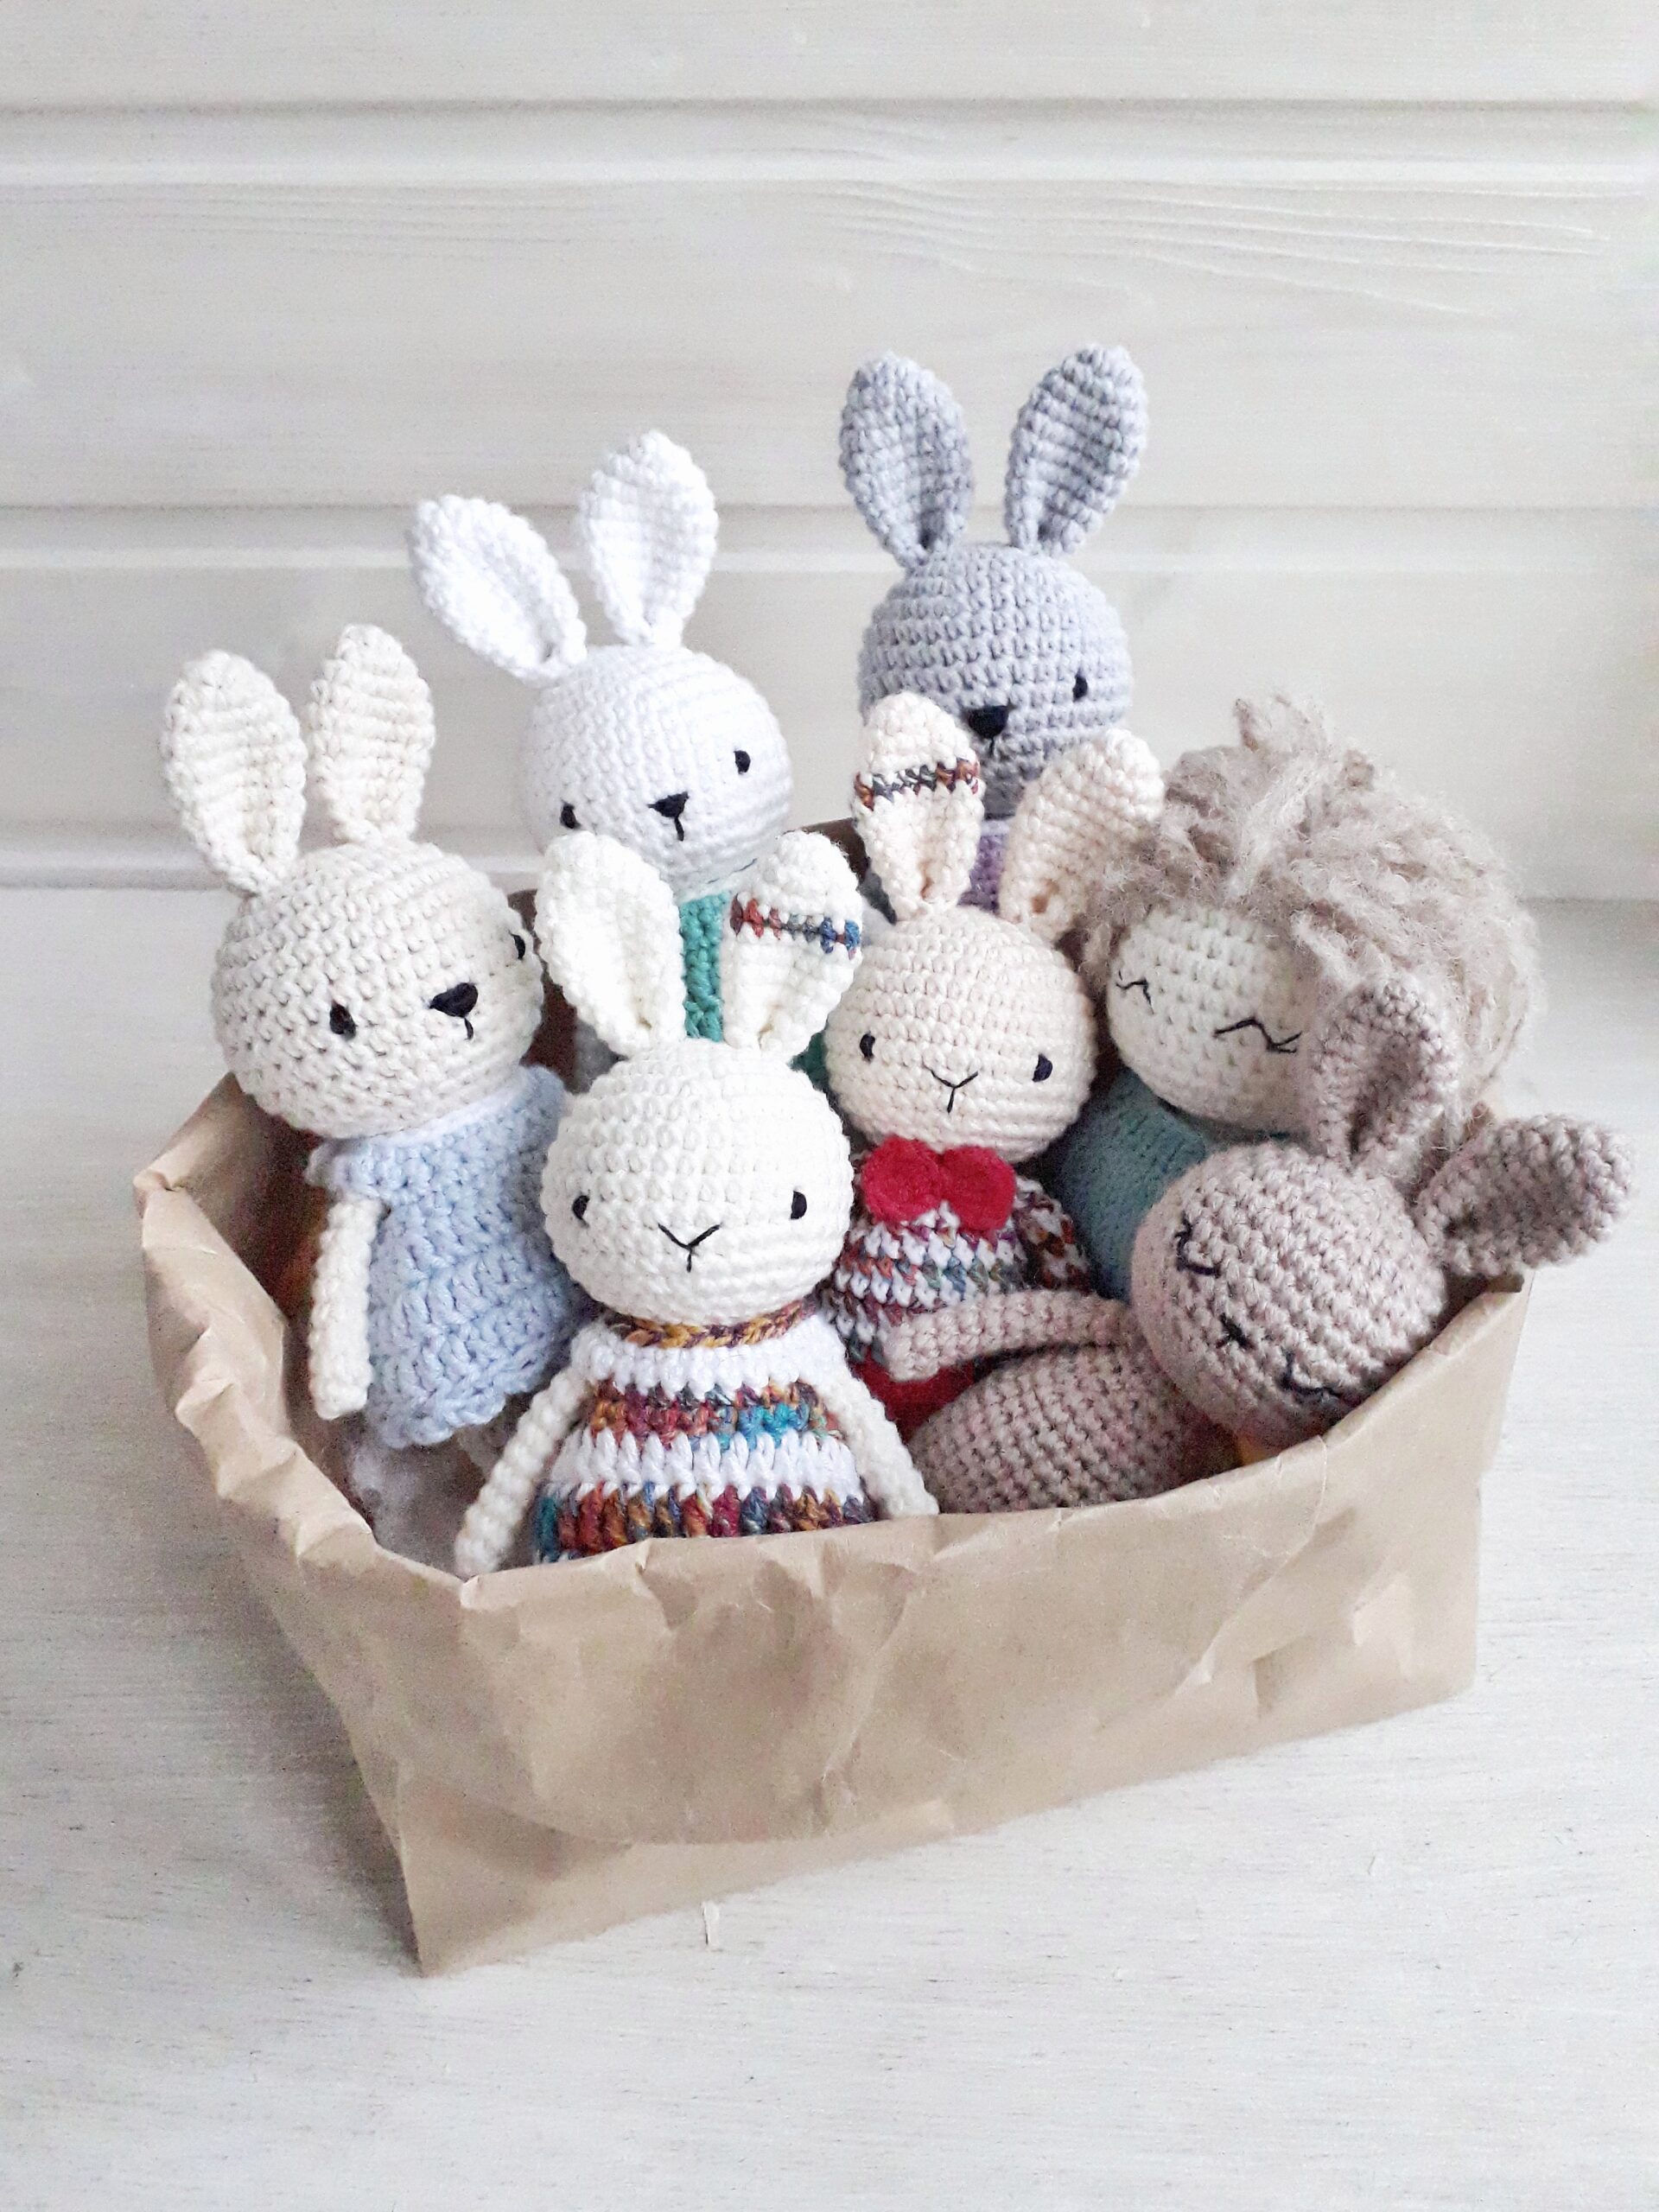 Amigurumi Bunny in dress crochet pattern for beginners, PDF